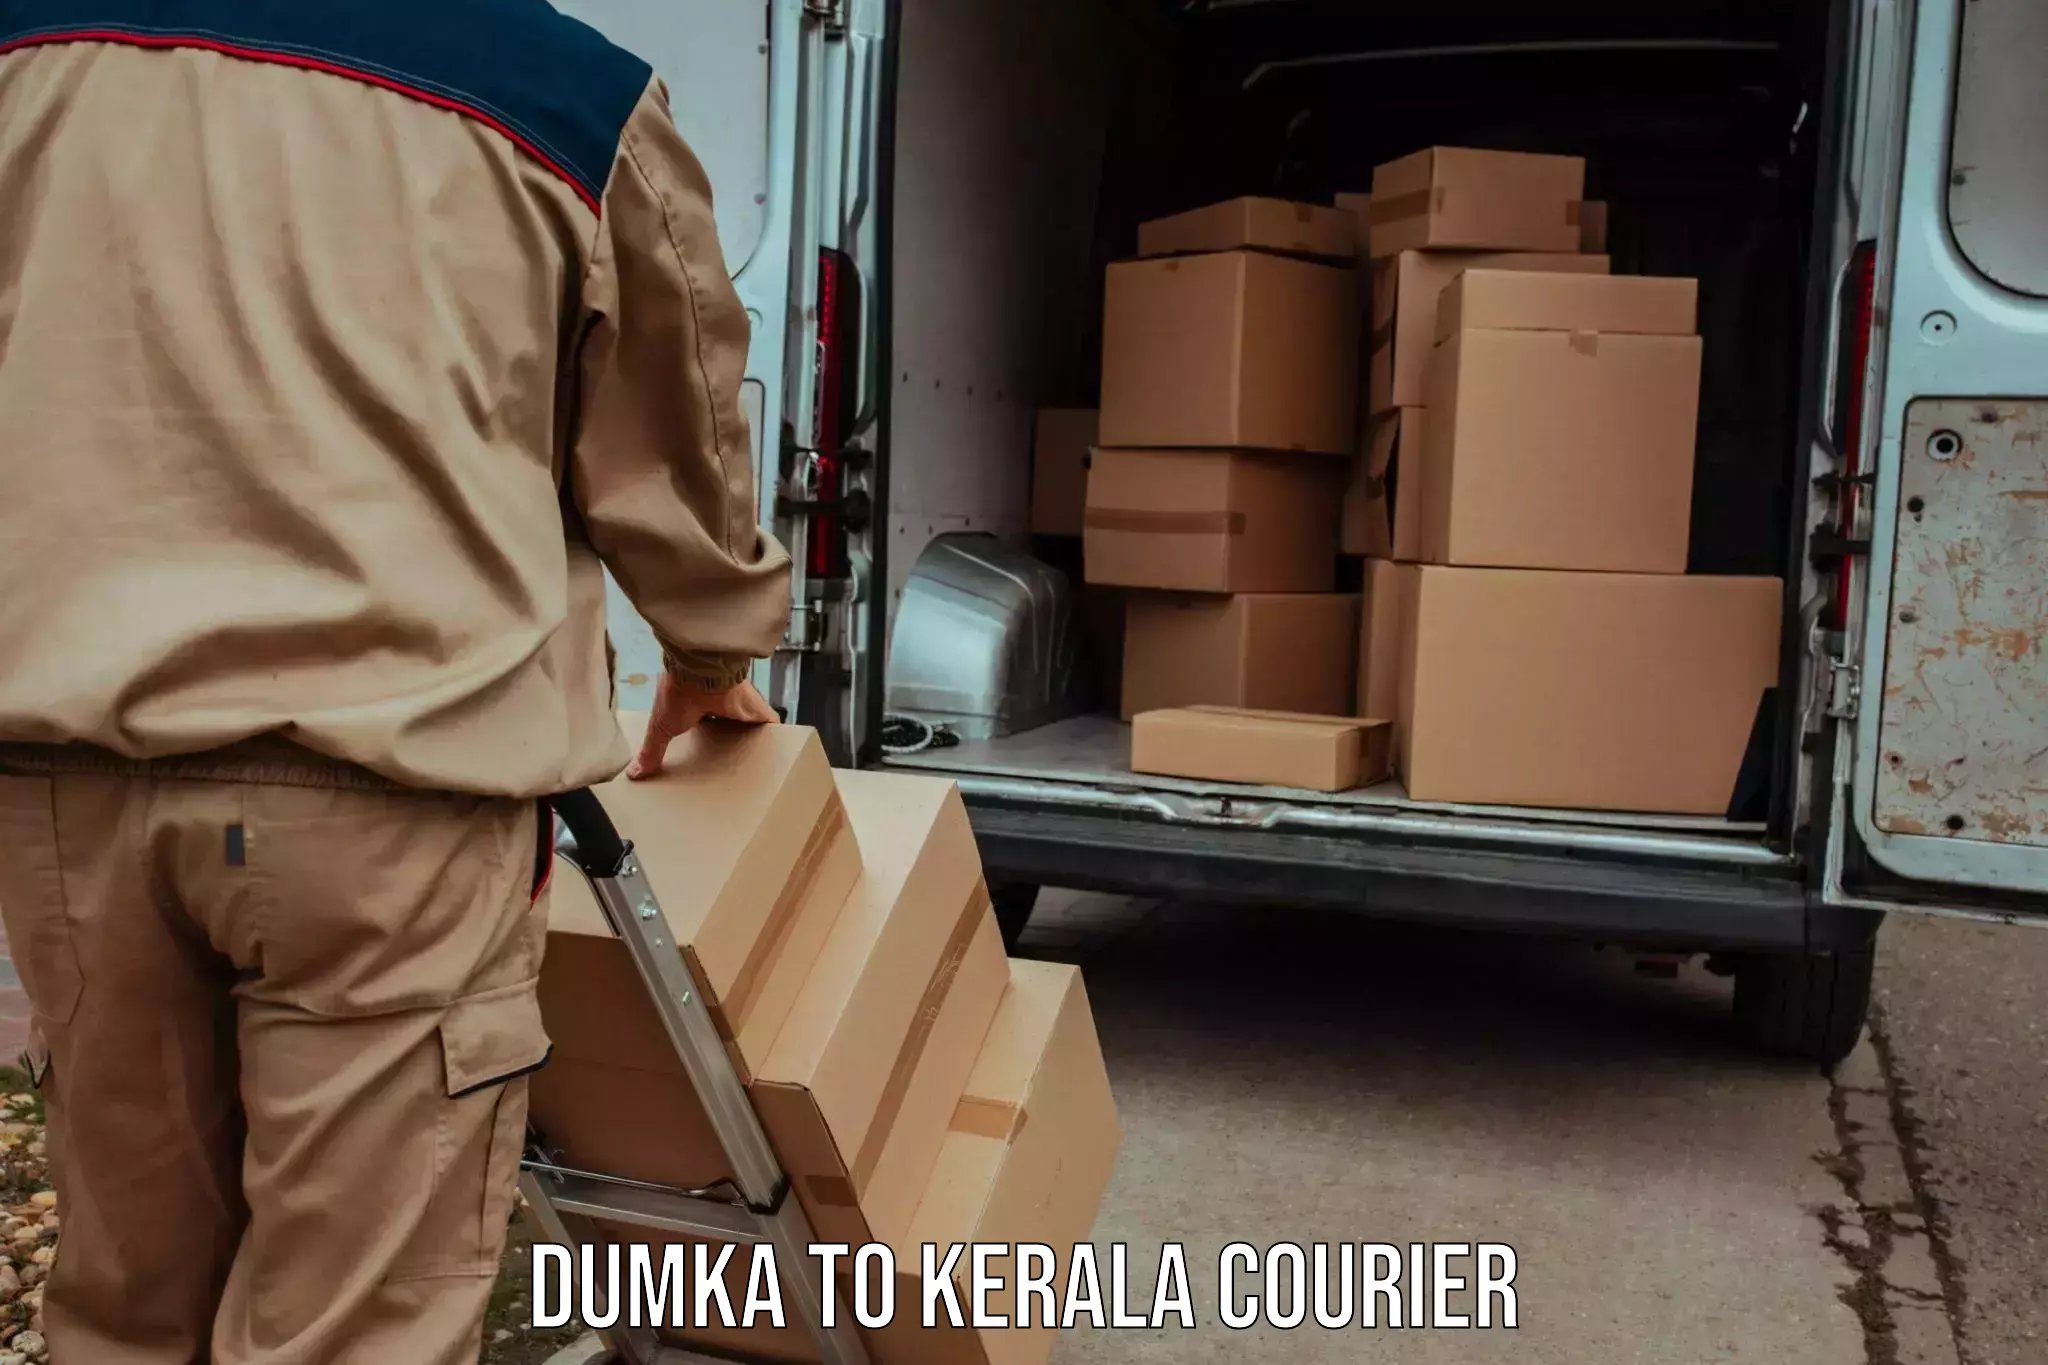 Reliable delivery network Dumka to Koothattukulam